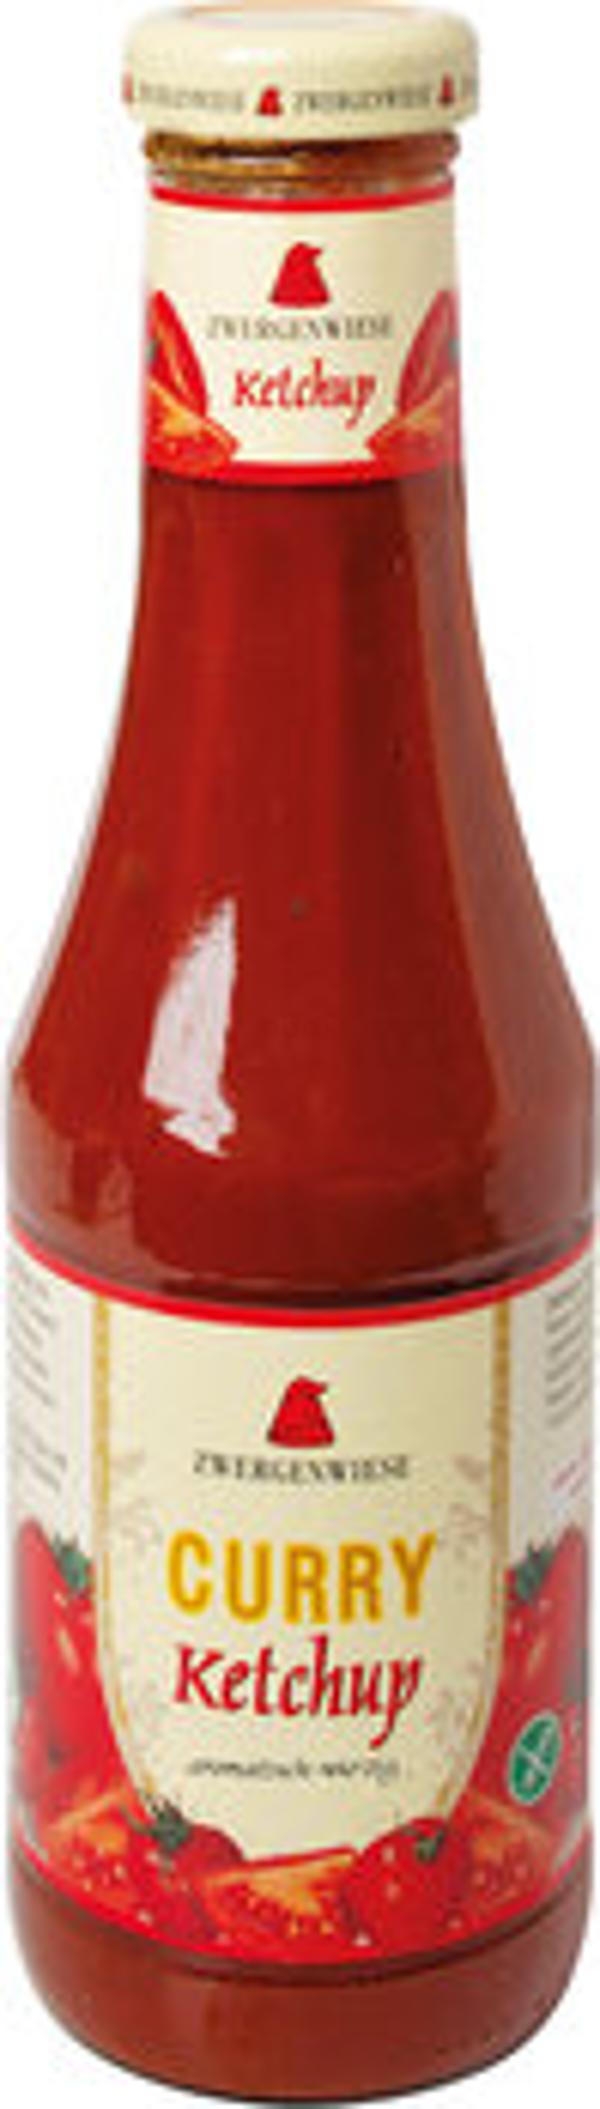 Produktfoto zu Curry Ketchup, 500ml